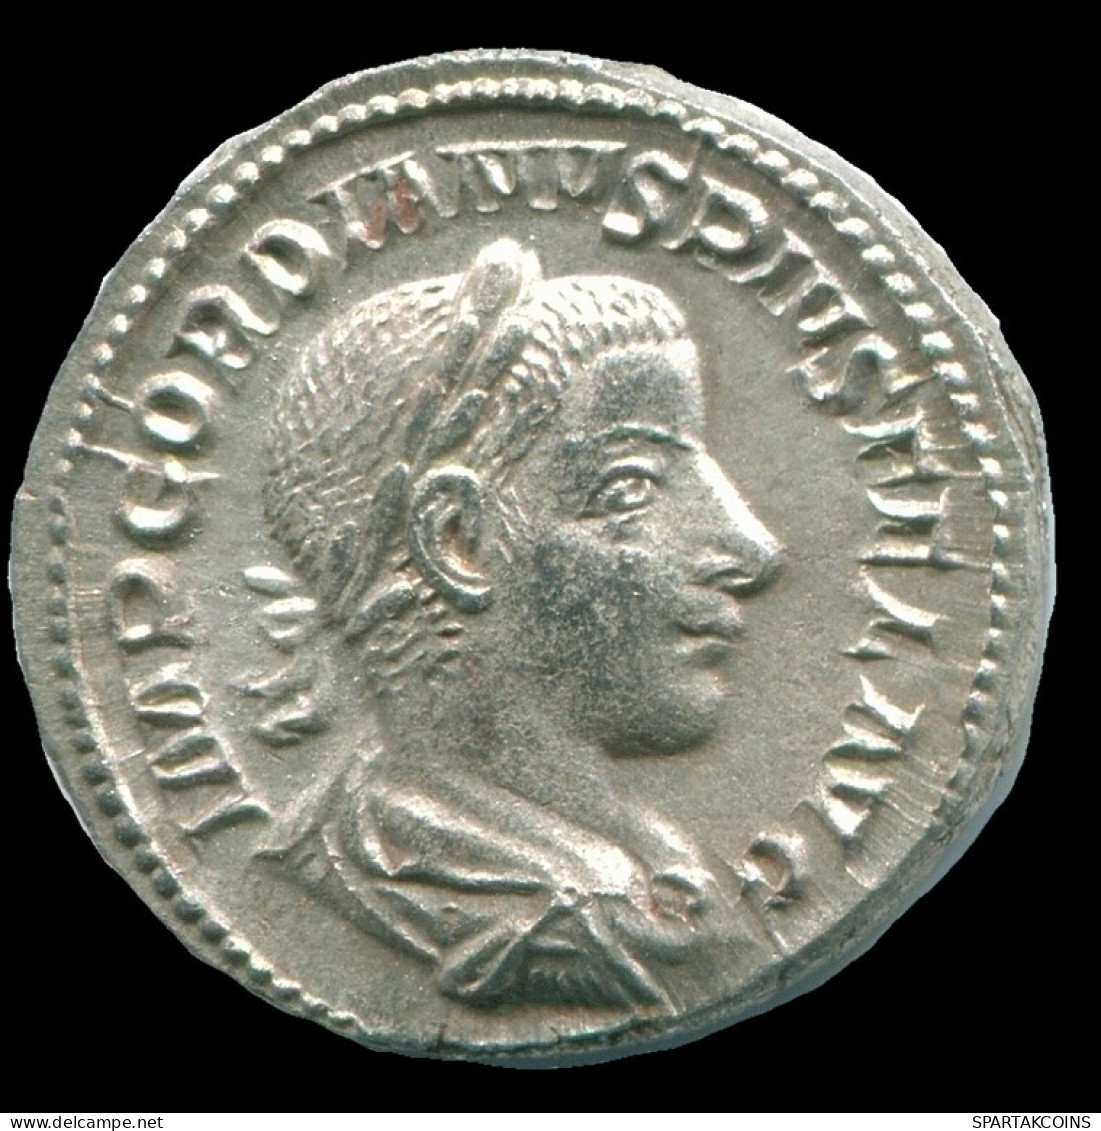 GORDIAN III AR DENARIUS ROME (7TH ISSUE. 1ST OFFICINA) DIANA #ANC13049.84.F.A - Der Soldatenkaiser (die Militärkrise) (235 / 284)